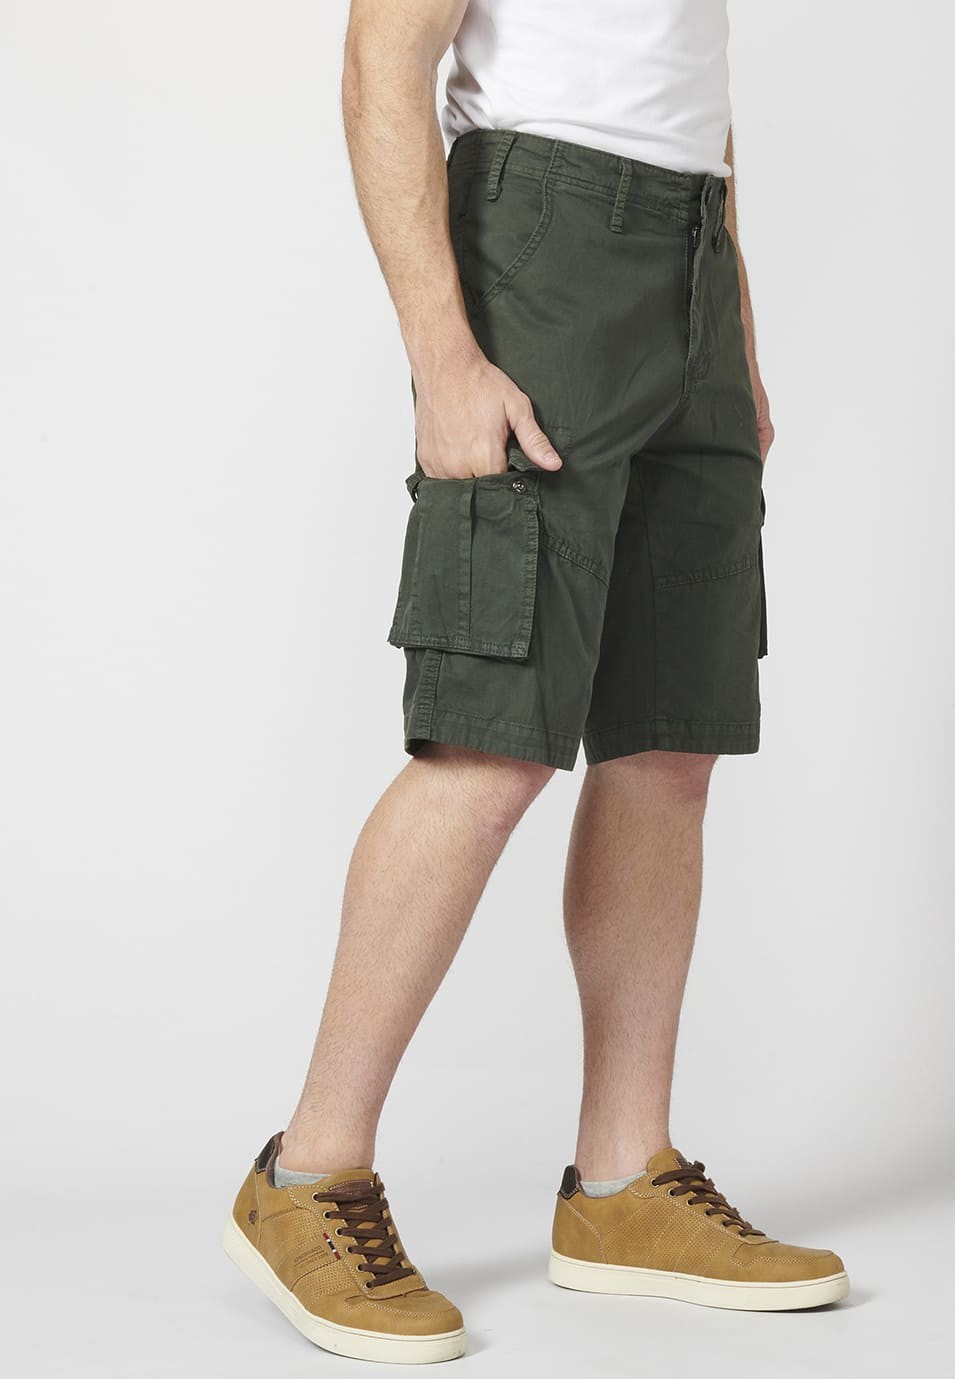 Bermuda pantalón corto estilo cargo para hombre con seis bolsillos 8